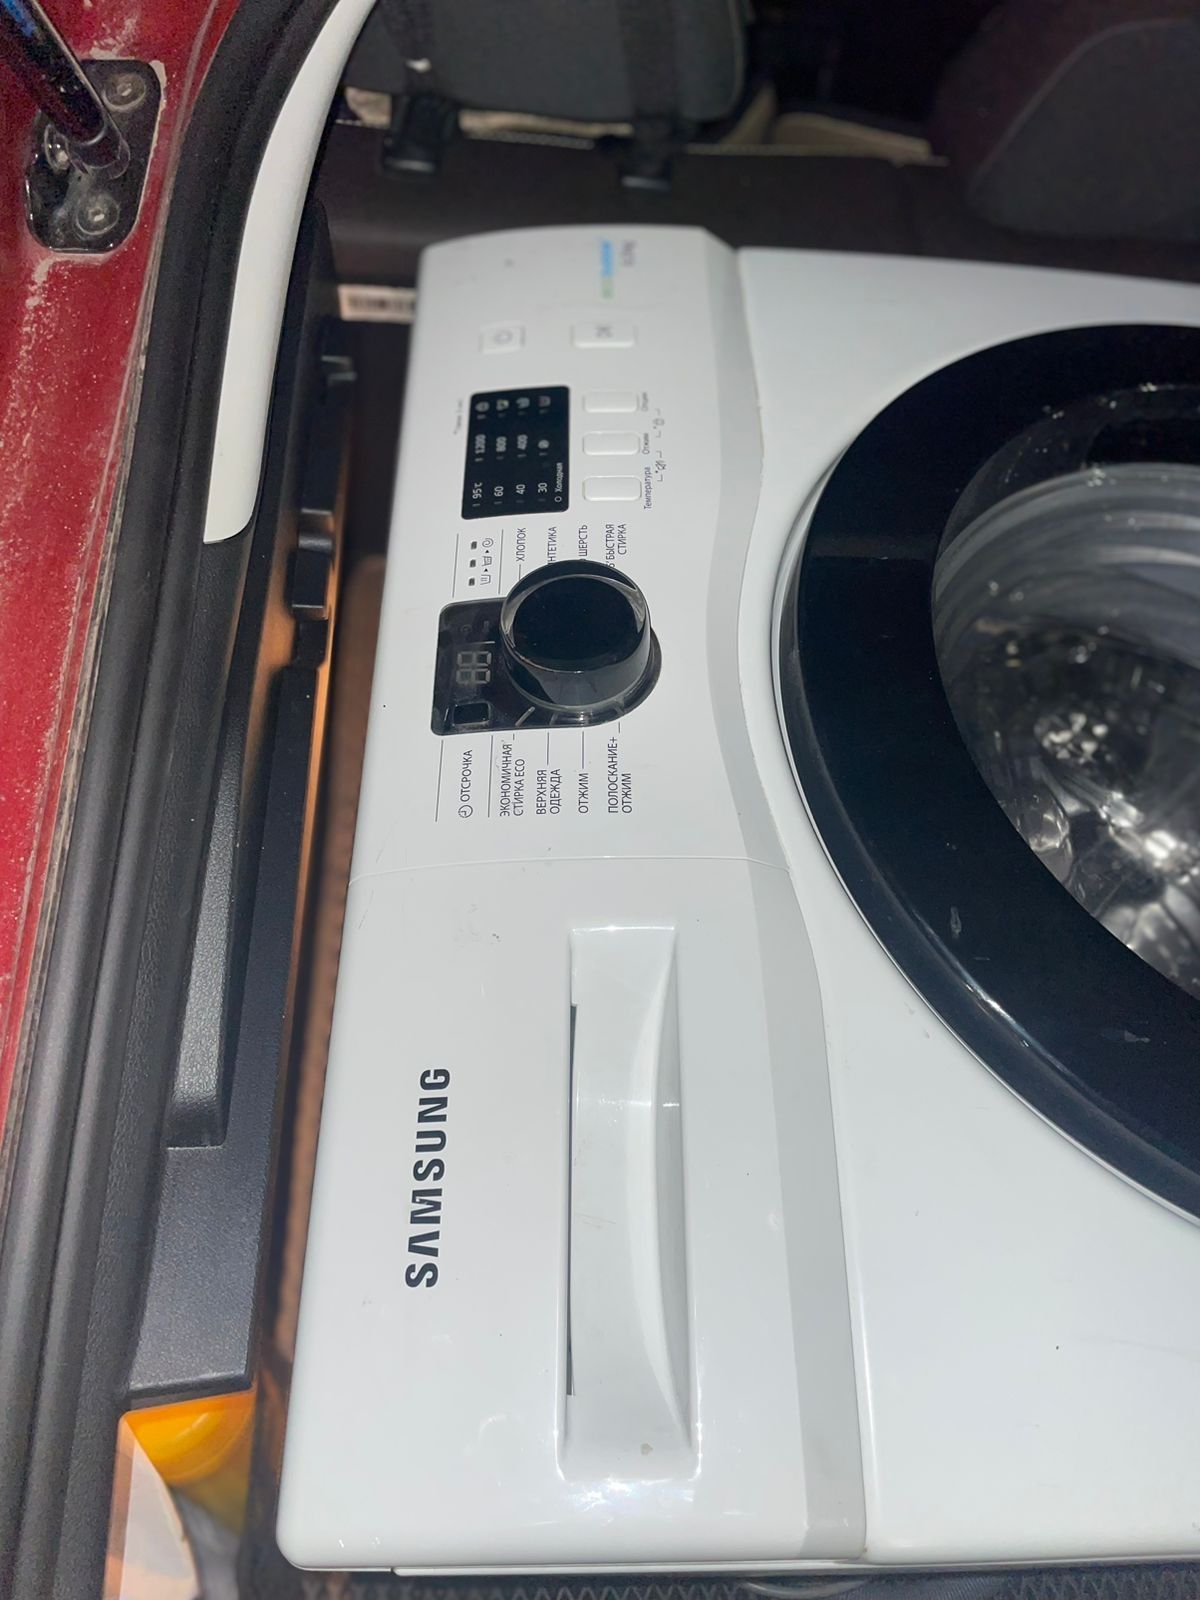 Стиральная машина Samsung